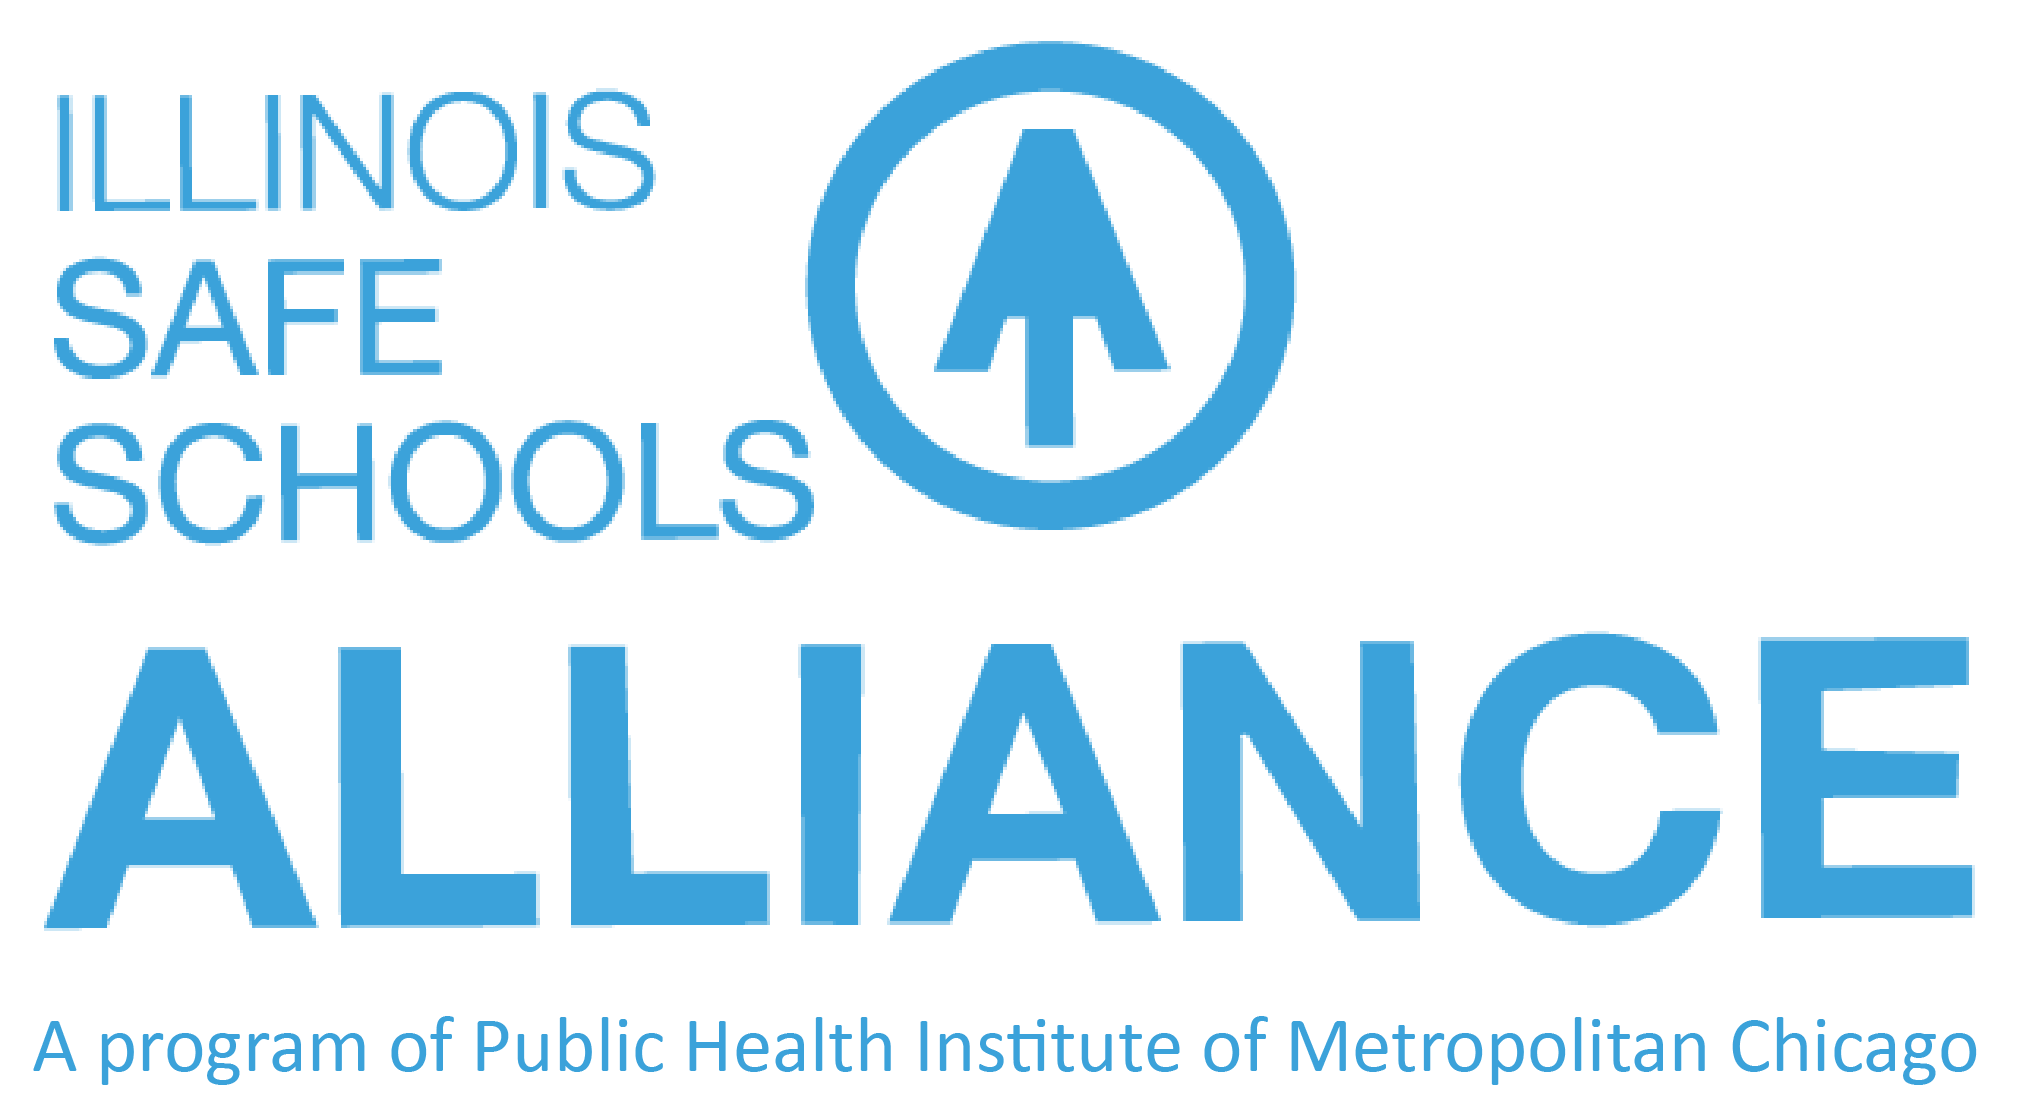 The Illinois Safe Schools Alliance